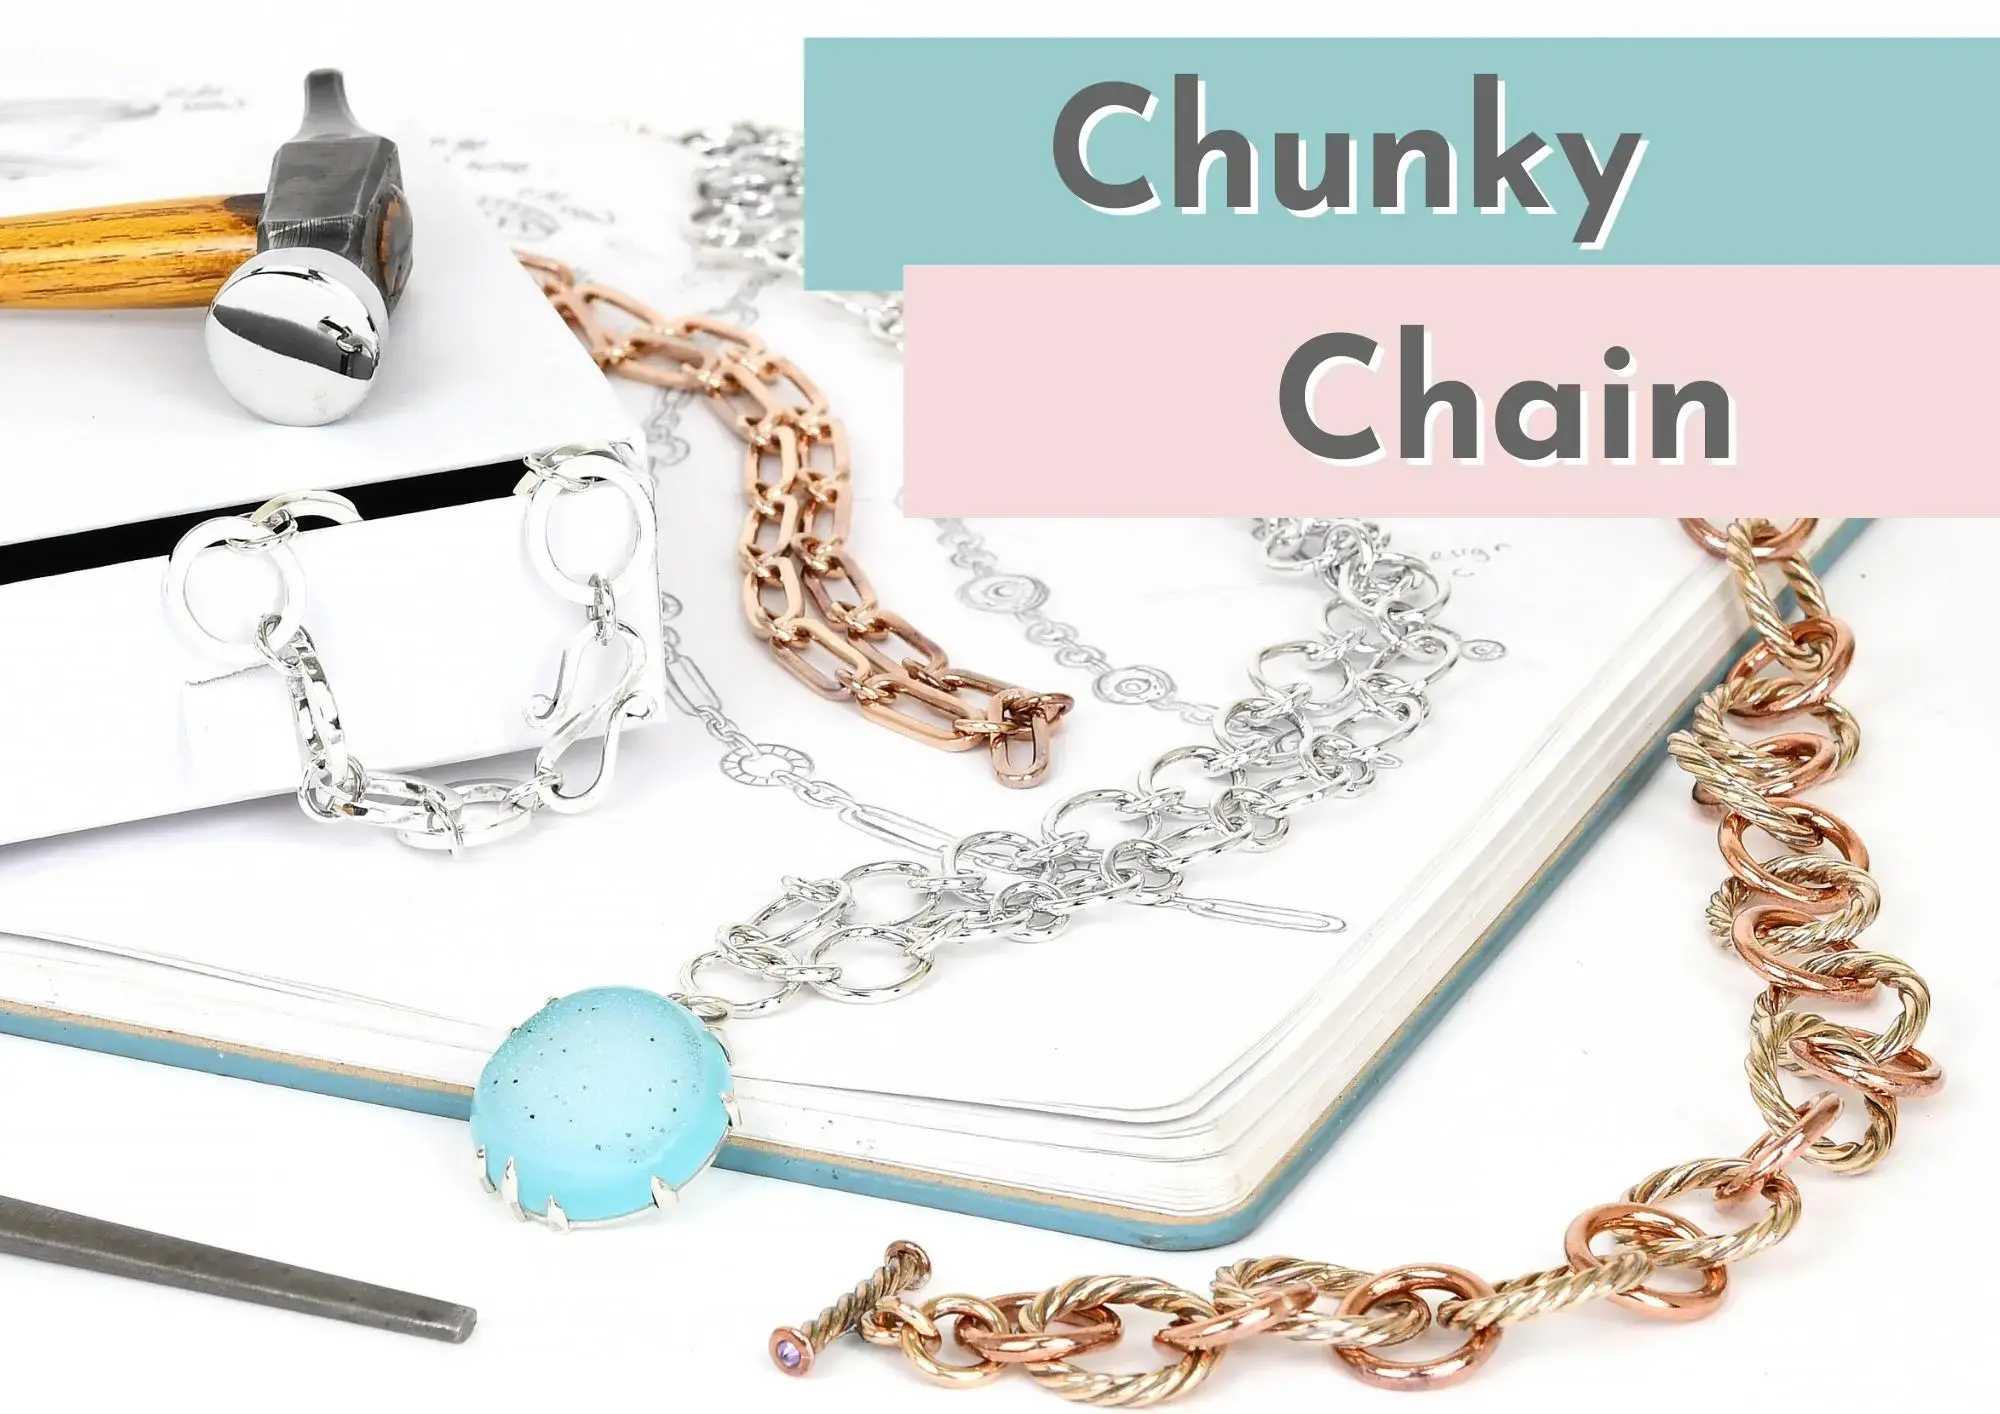 Chunky chain class